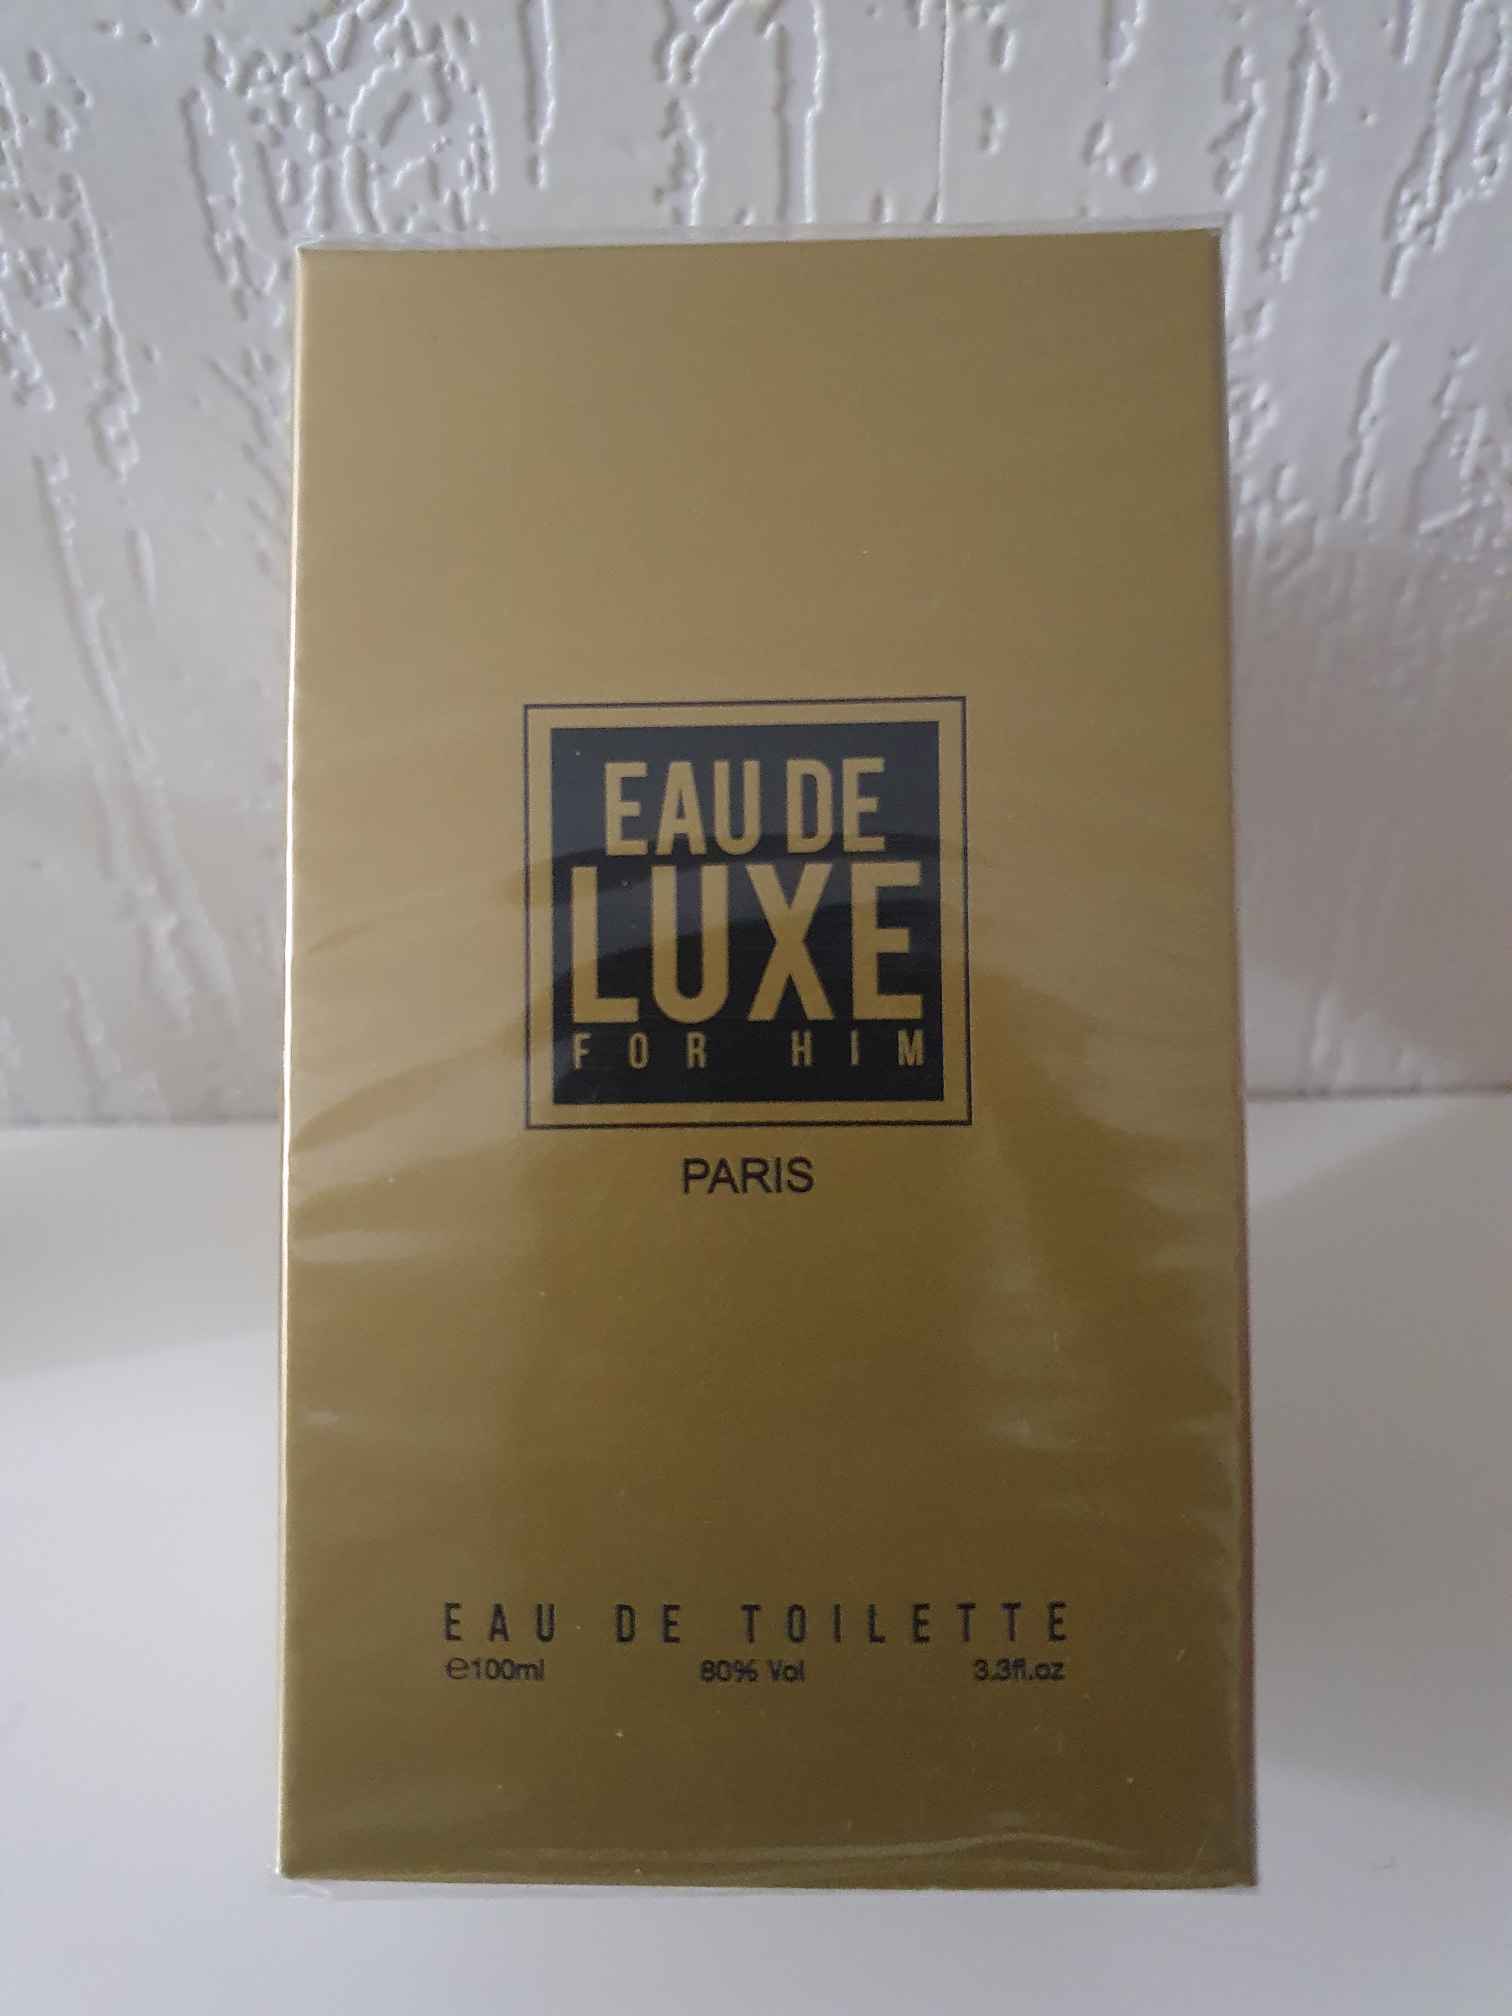 image du groupe parfum Eau de luxe for him paris